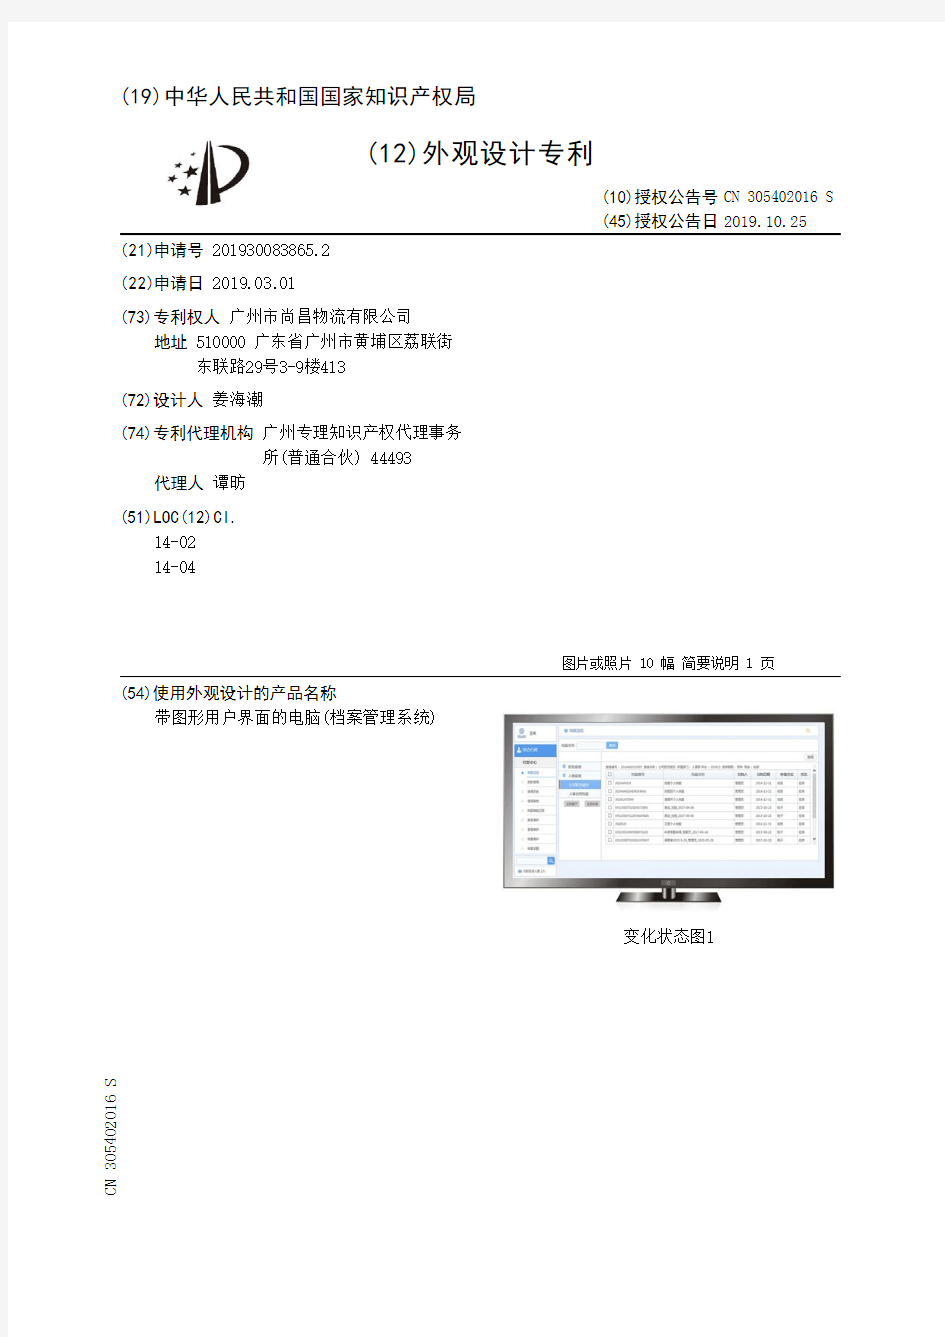 【CN305402016S】带图形用户界面的电脑(档案管理系统)【专利】